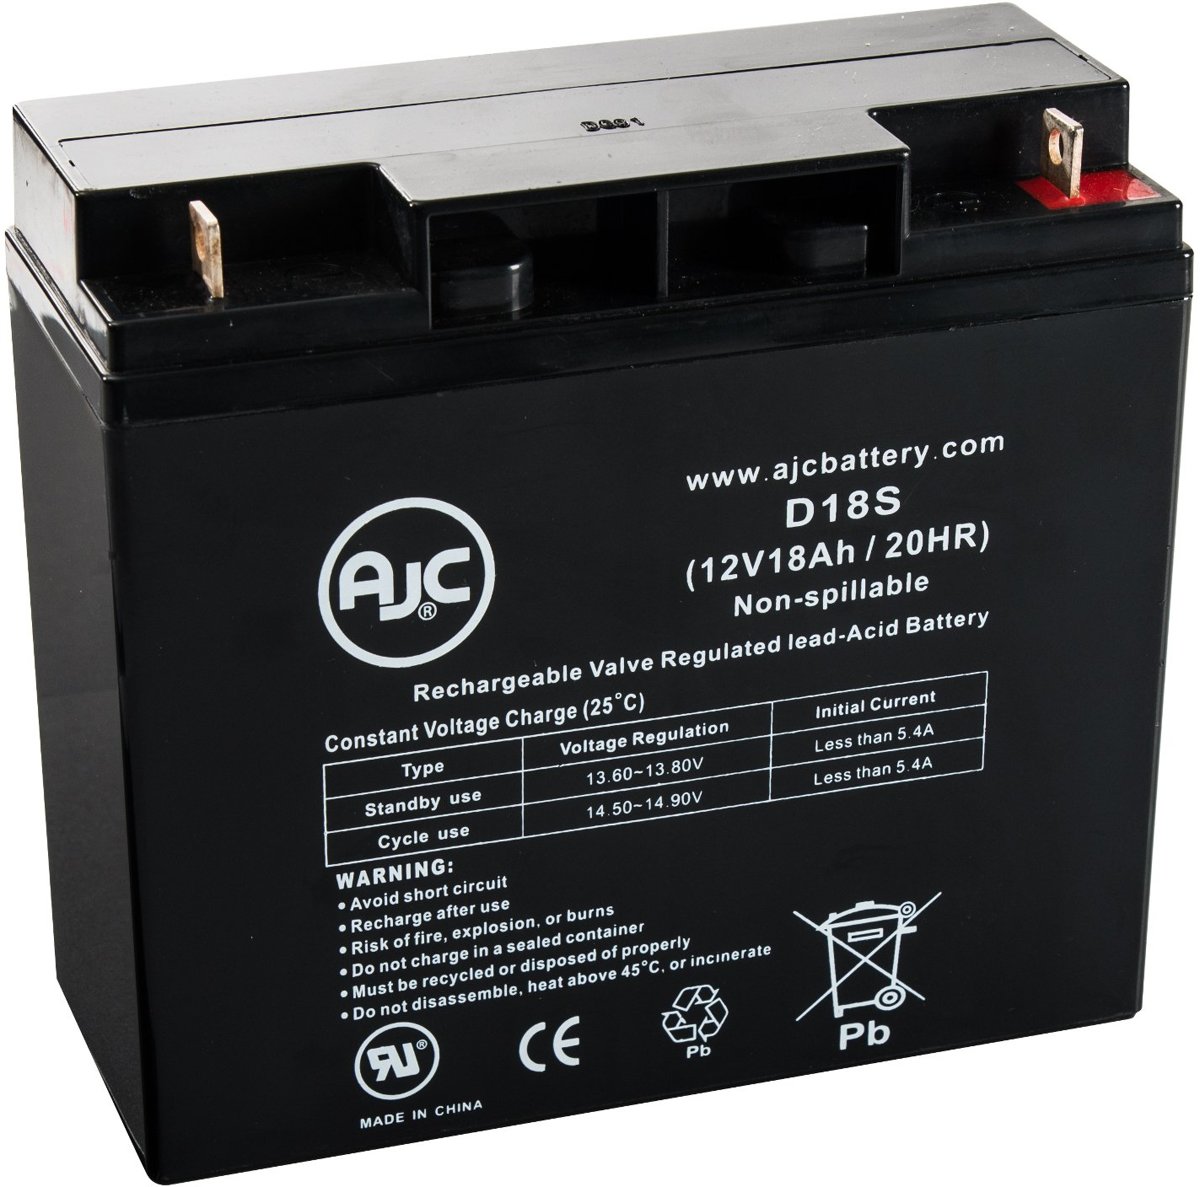 AJC� battery compatibel met Sonnenschein A512/16G5 12V 18Ah Lood zuur accu